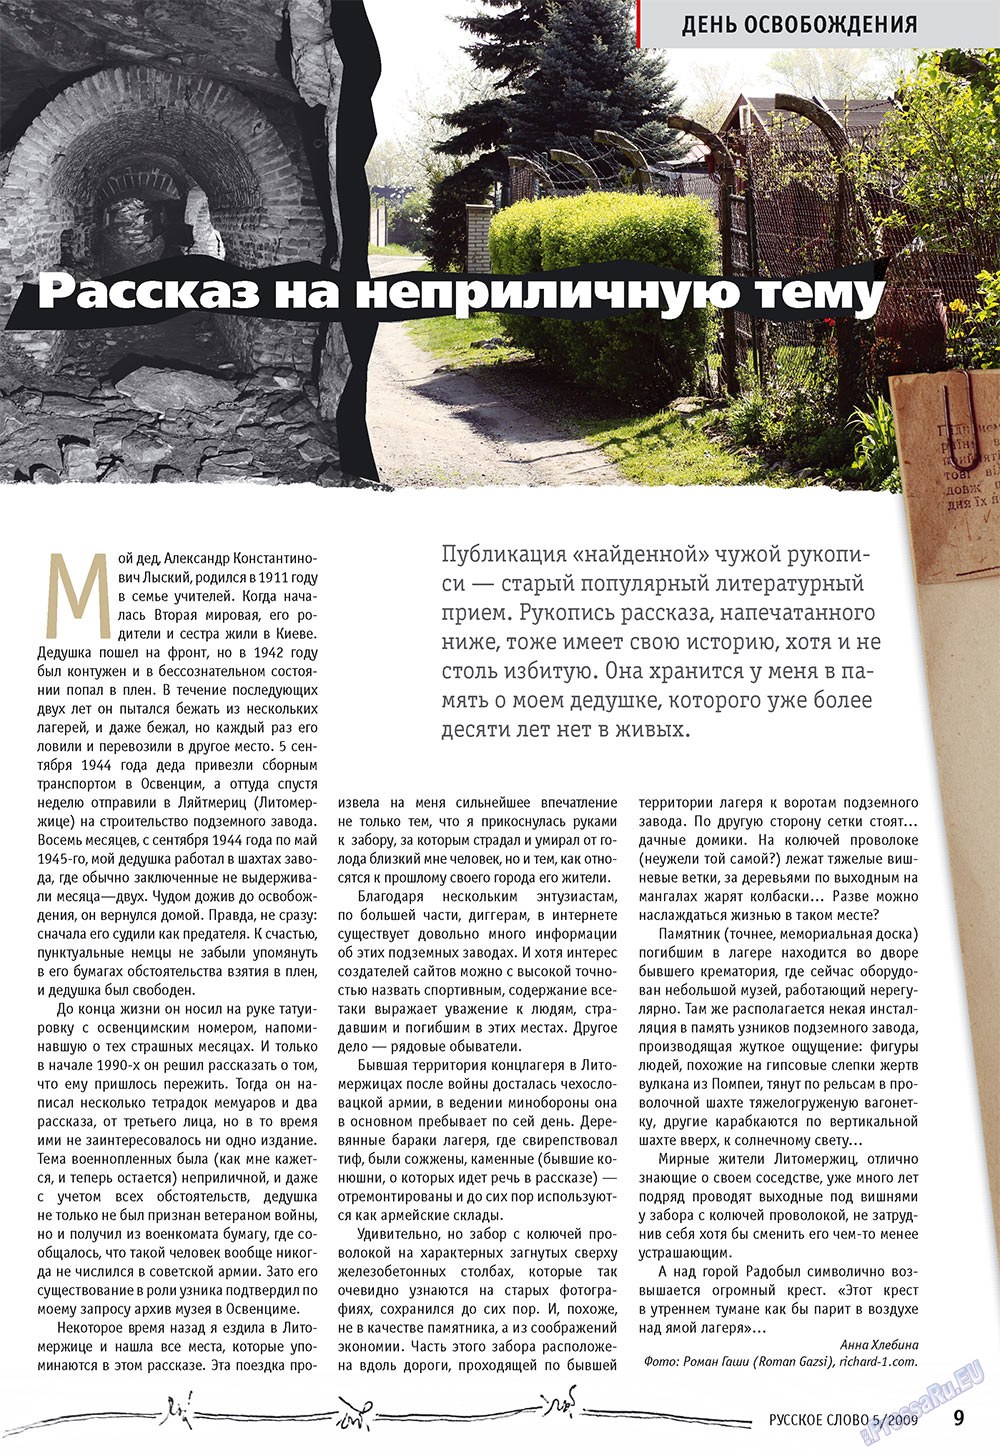 Русское слово, журнал. 2009 №5 стр.11